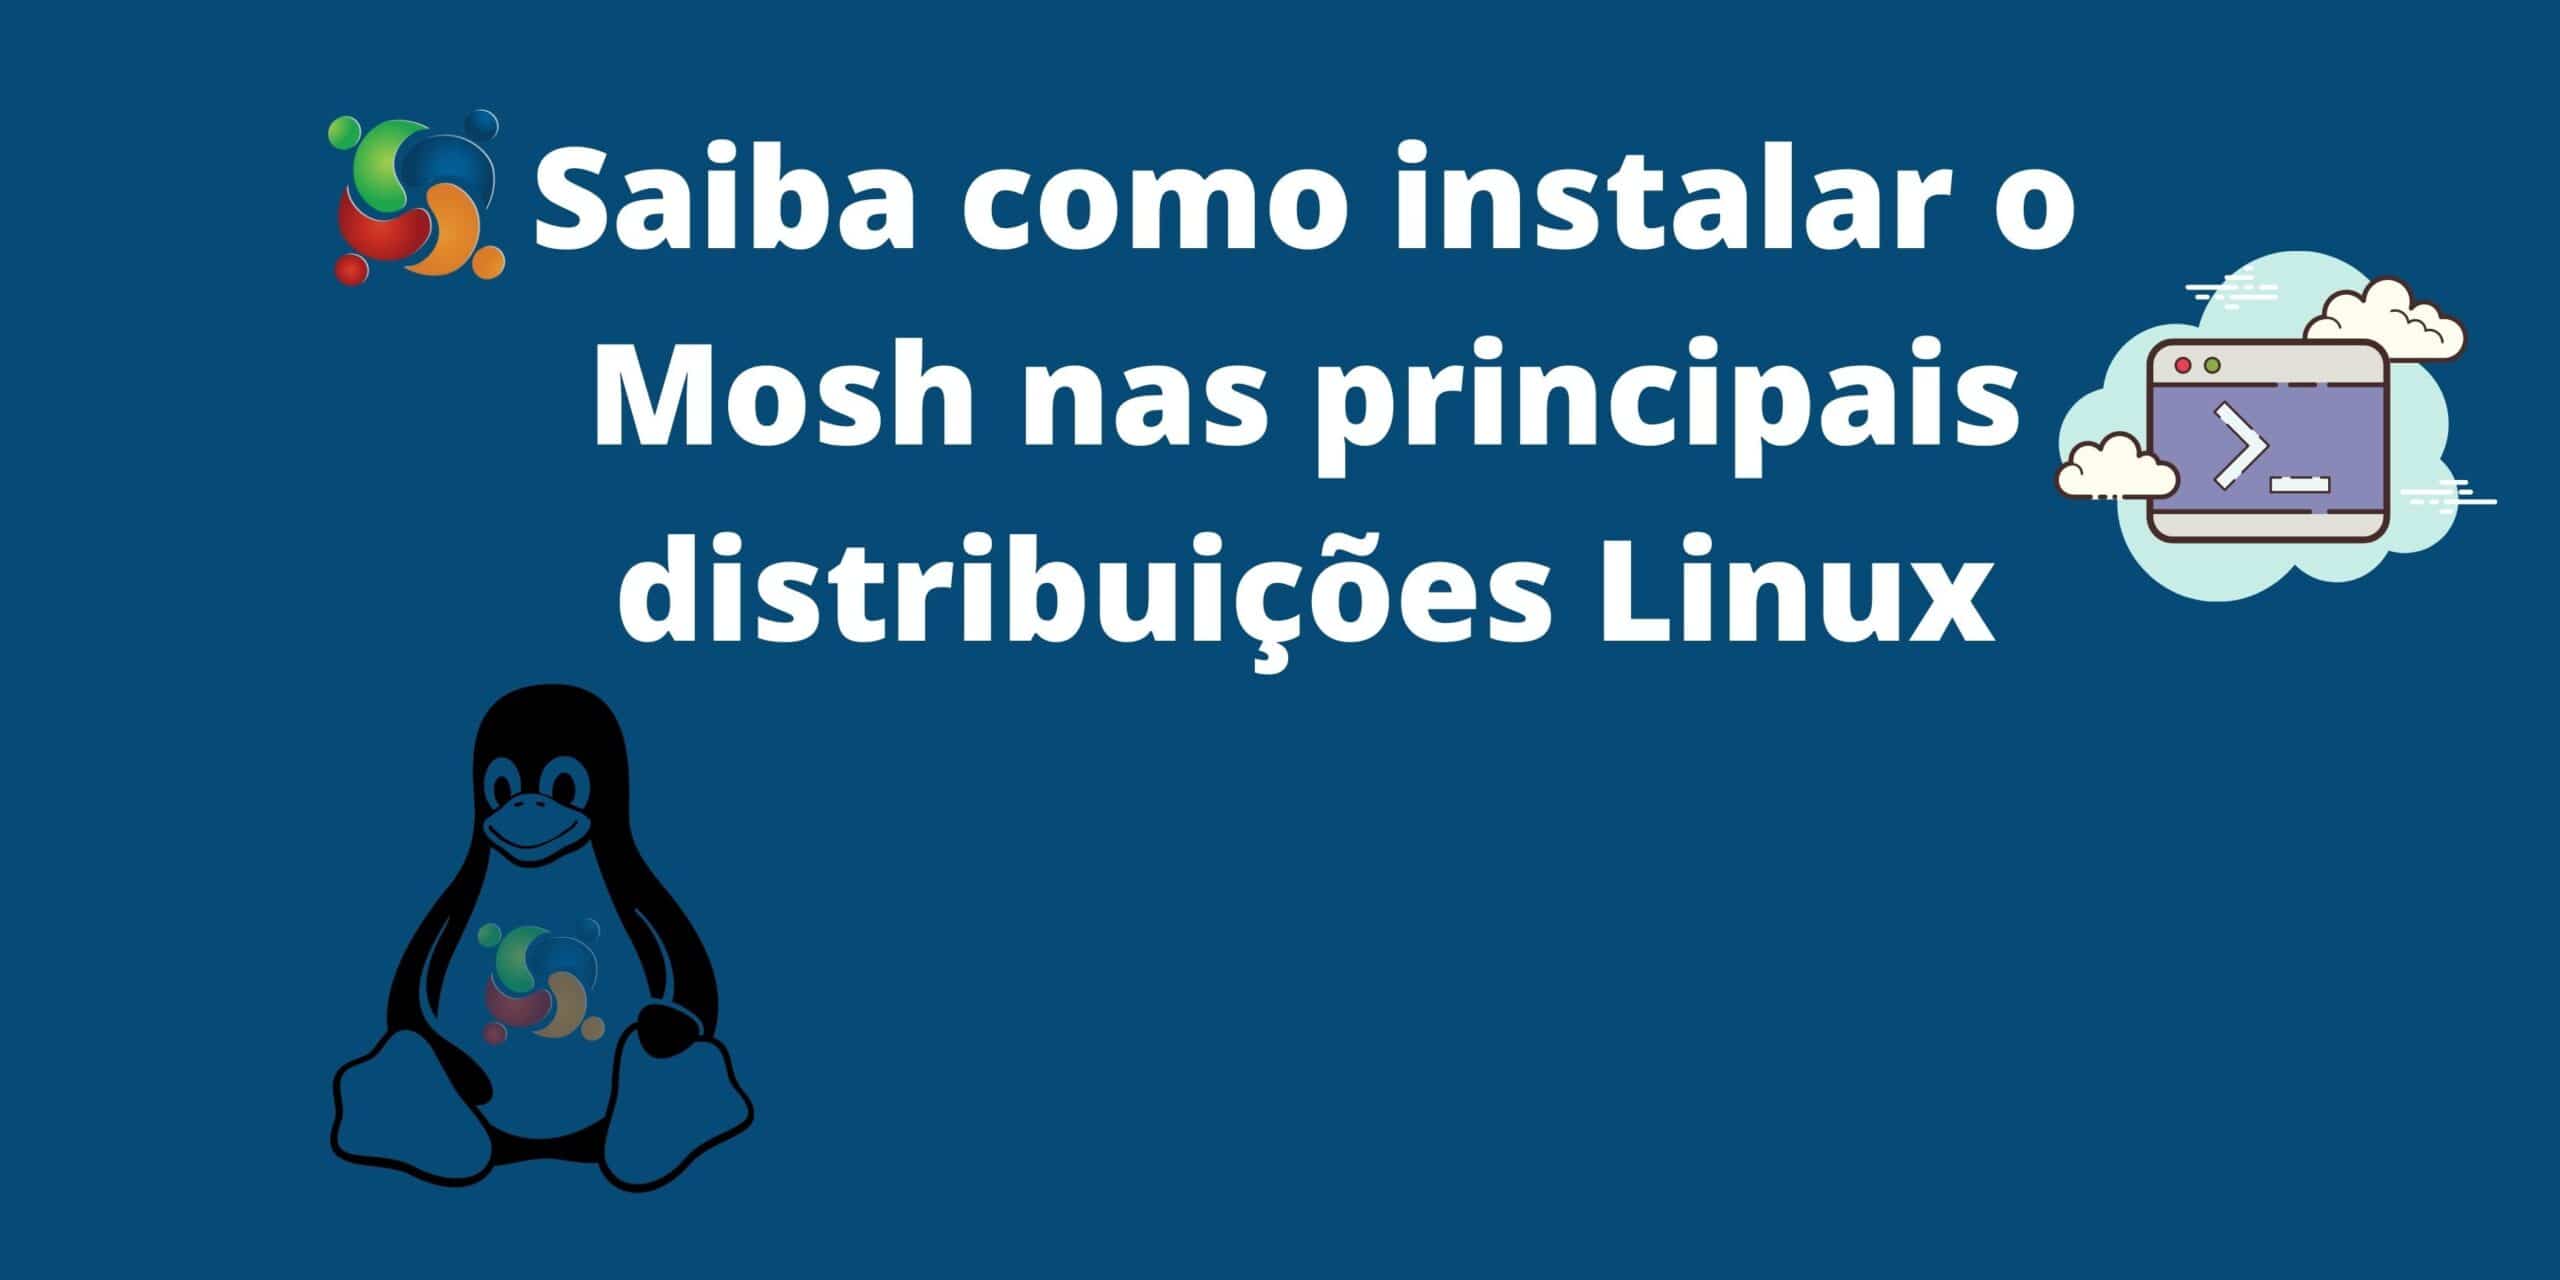 Saiba como instalar o Mosh (Mobile Shell) no Ubuntu, Arch Linux, Fedora, openSUSE, uma alternativa para acesso remoto SSH